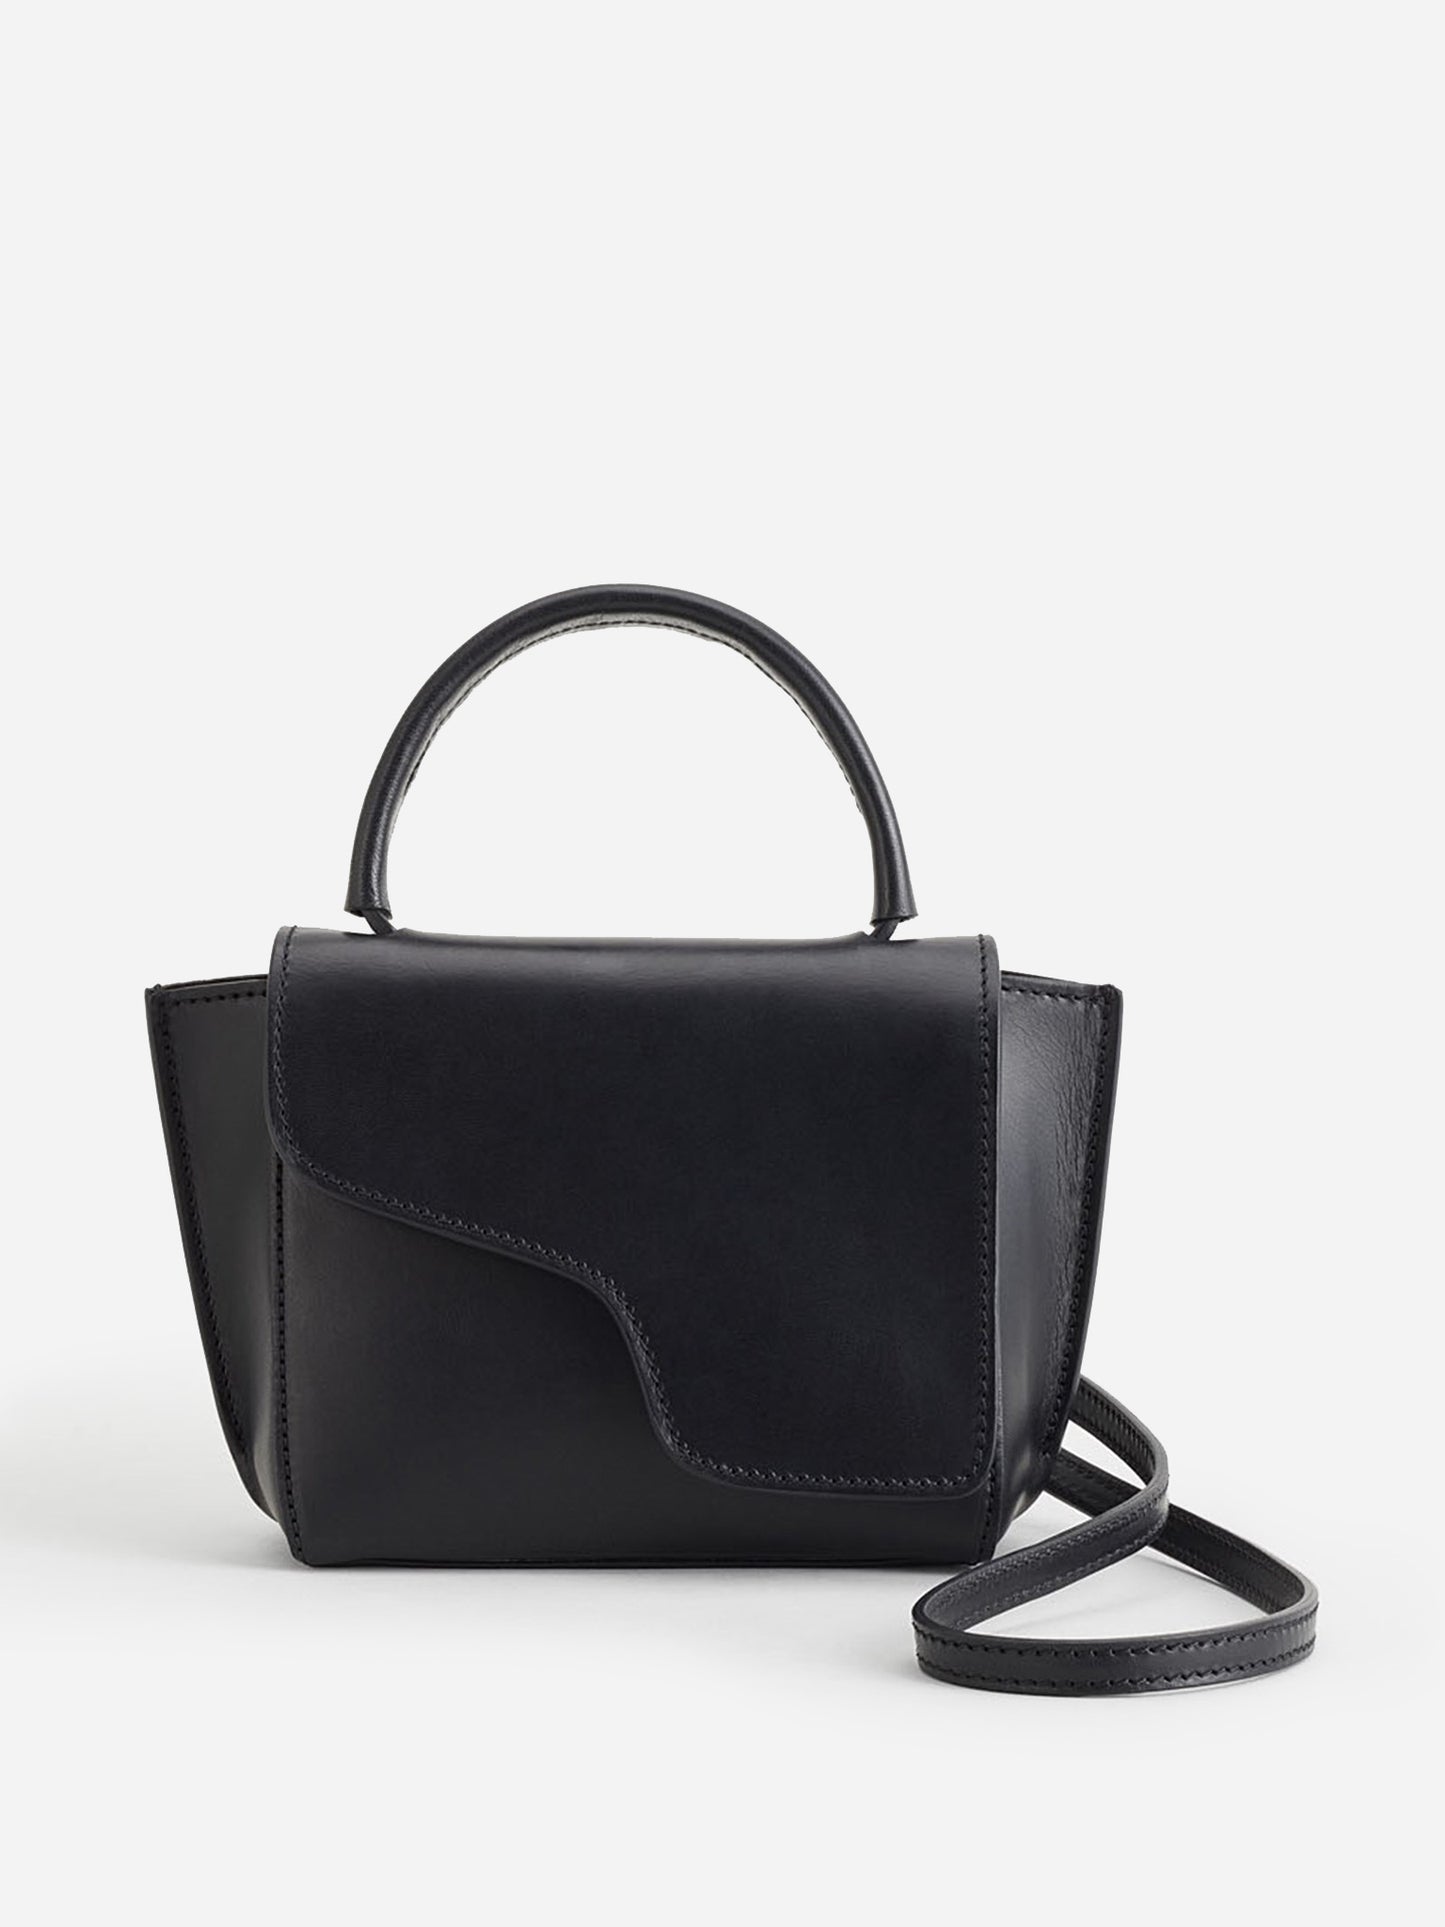 ATP Atelier Women's Montalcino Mini Handbag